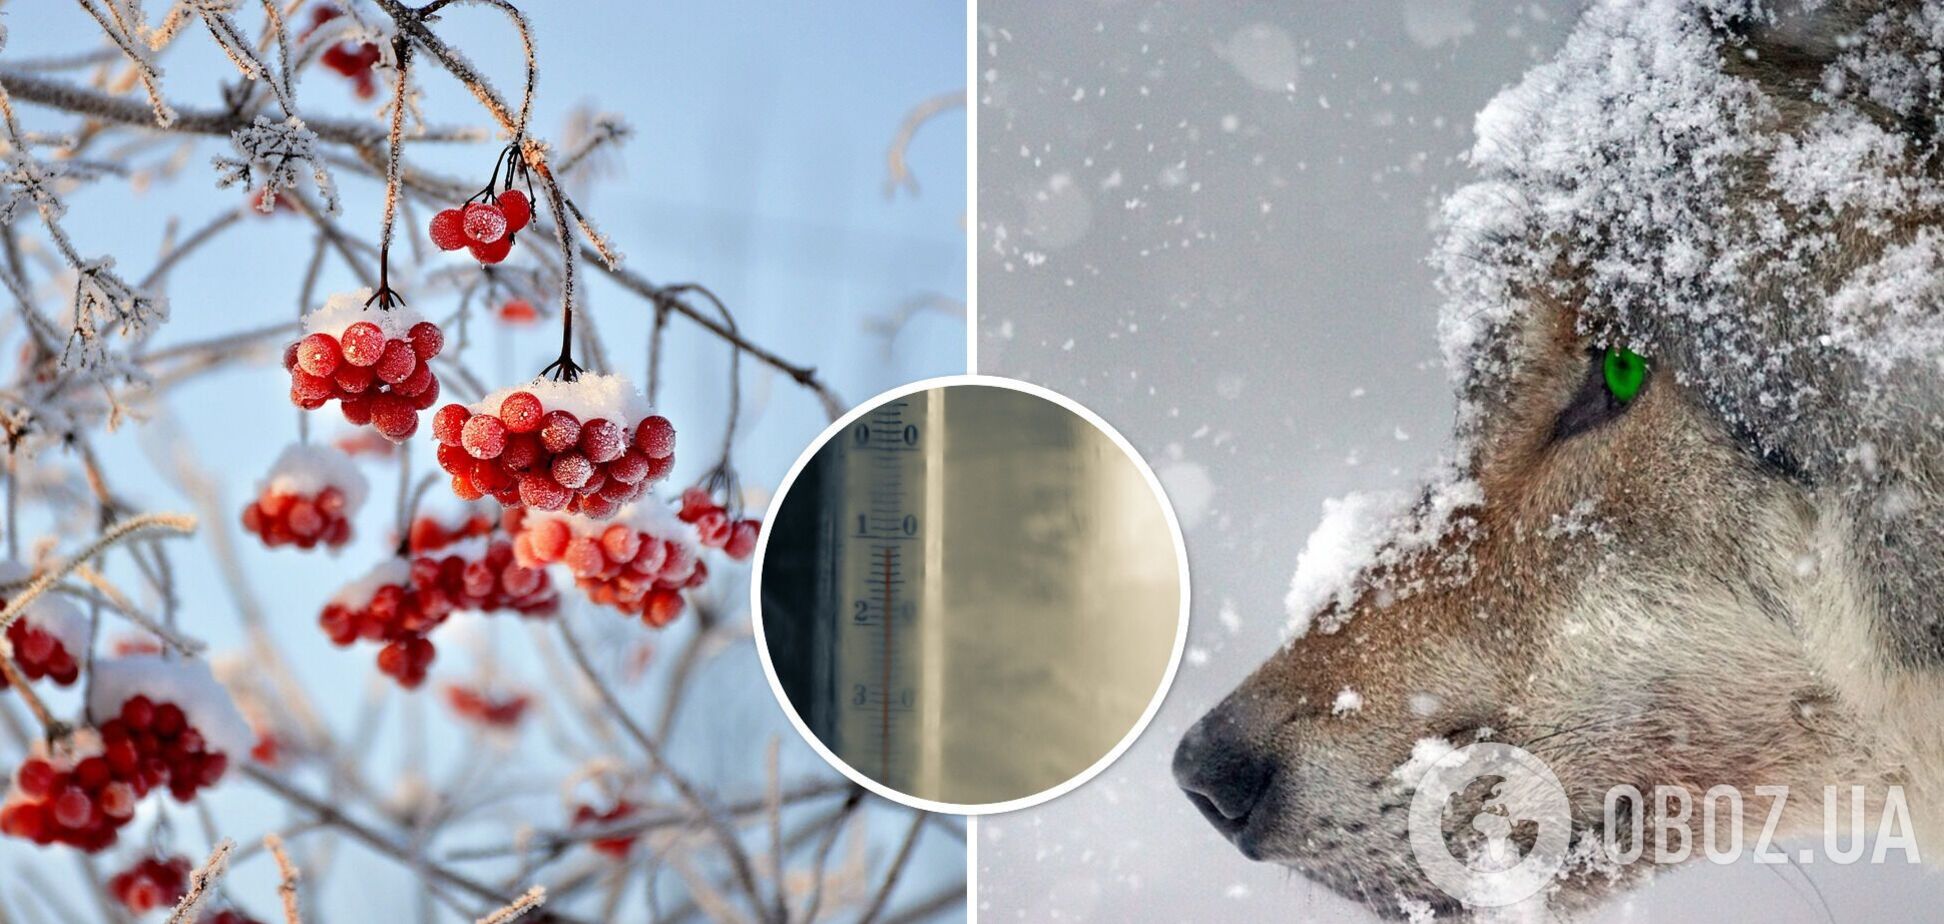 Ранней весны ждать не стоит: в Укргидрометцентре предупредили о возвращении морозов